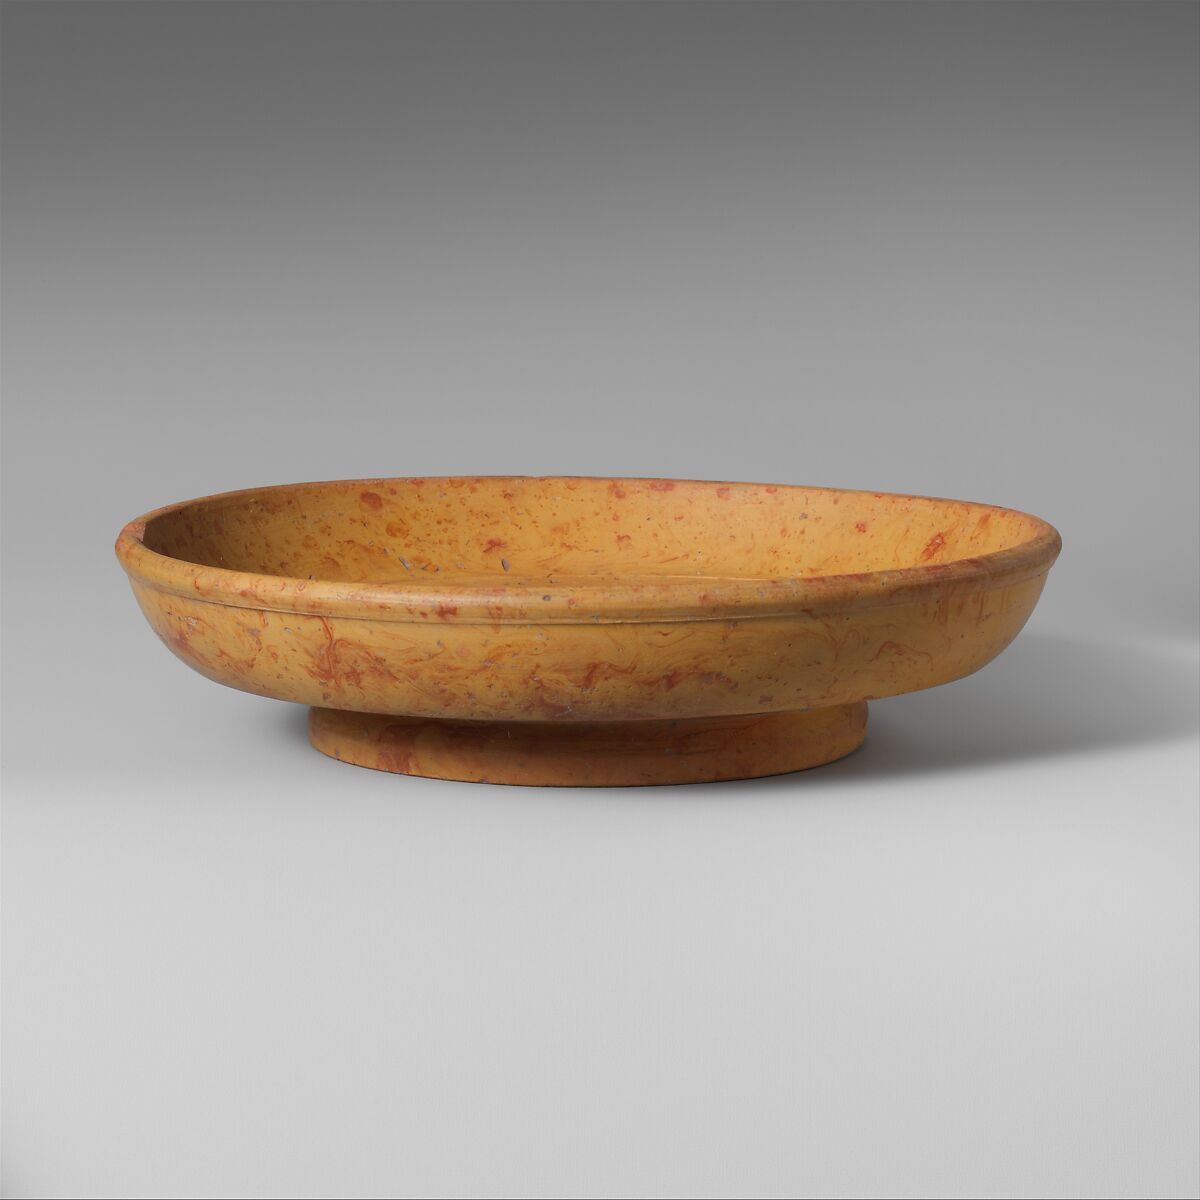 Terracotta marbled slip ware bowl